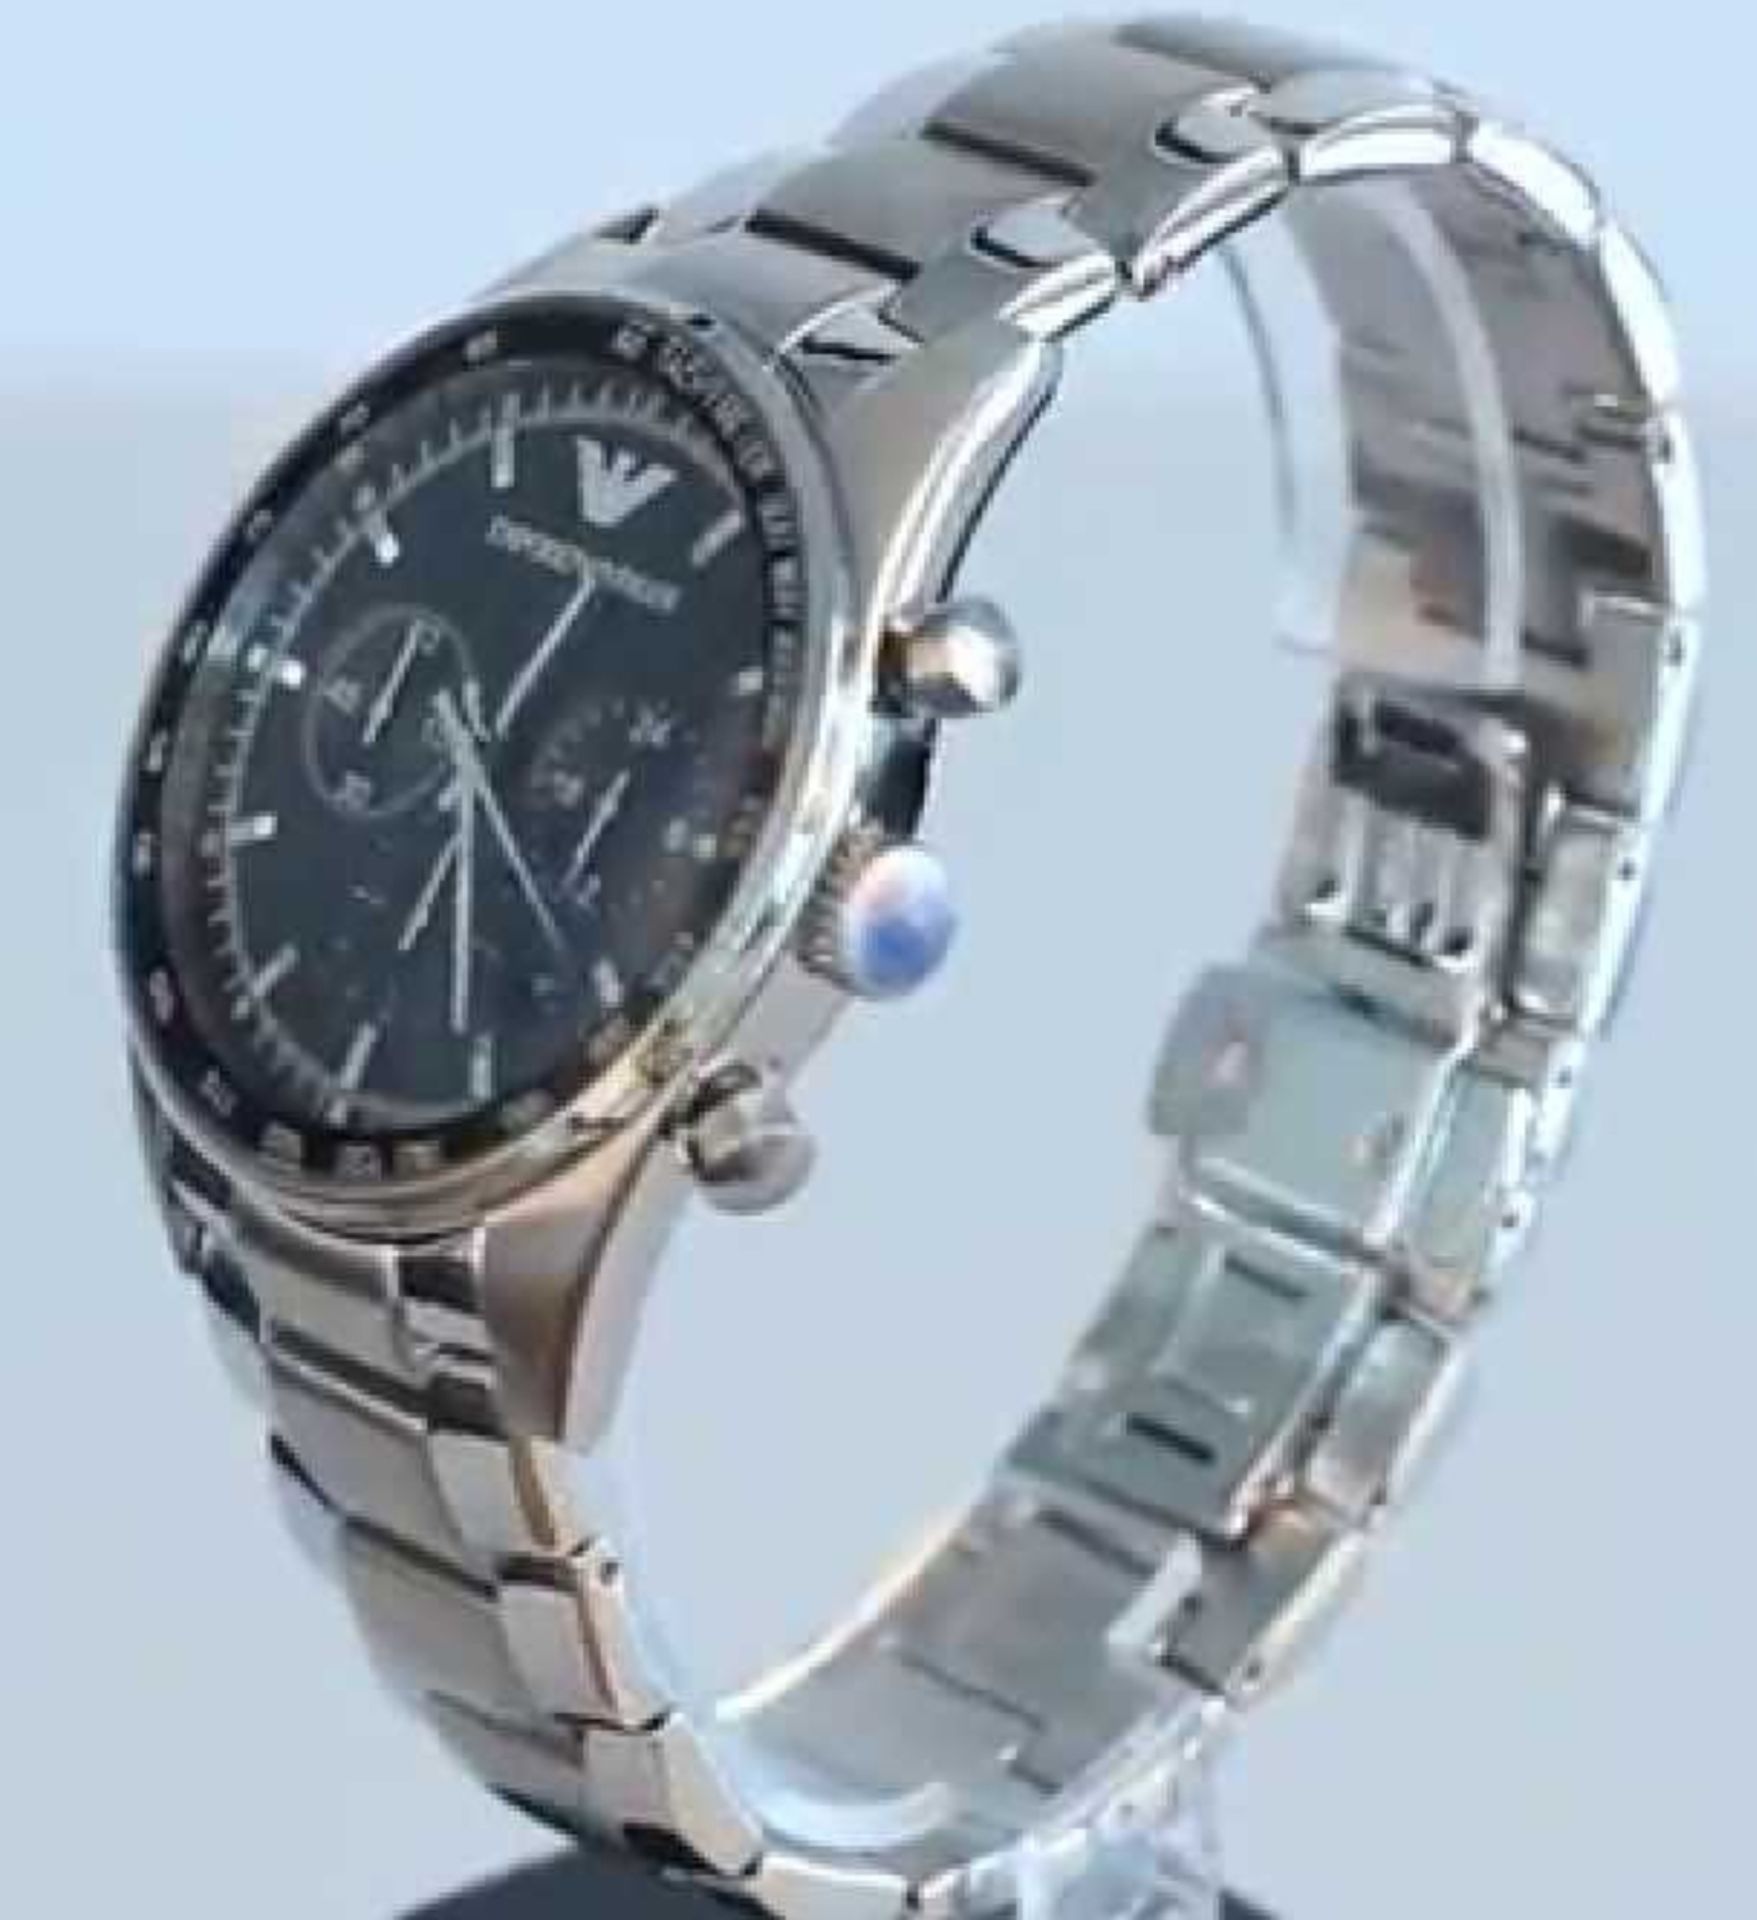 Emporio Armani AR5980 Men's Sportivo Black Dial Silver Bracelet Quartz Chronograph Watch - Image 3 of 7